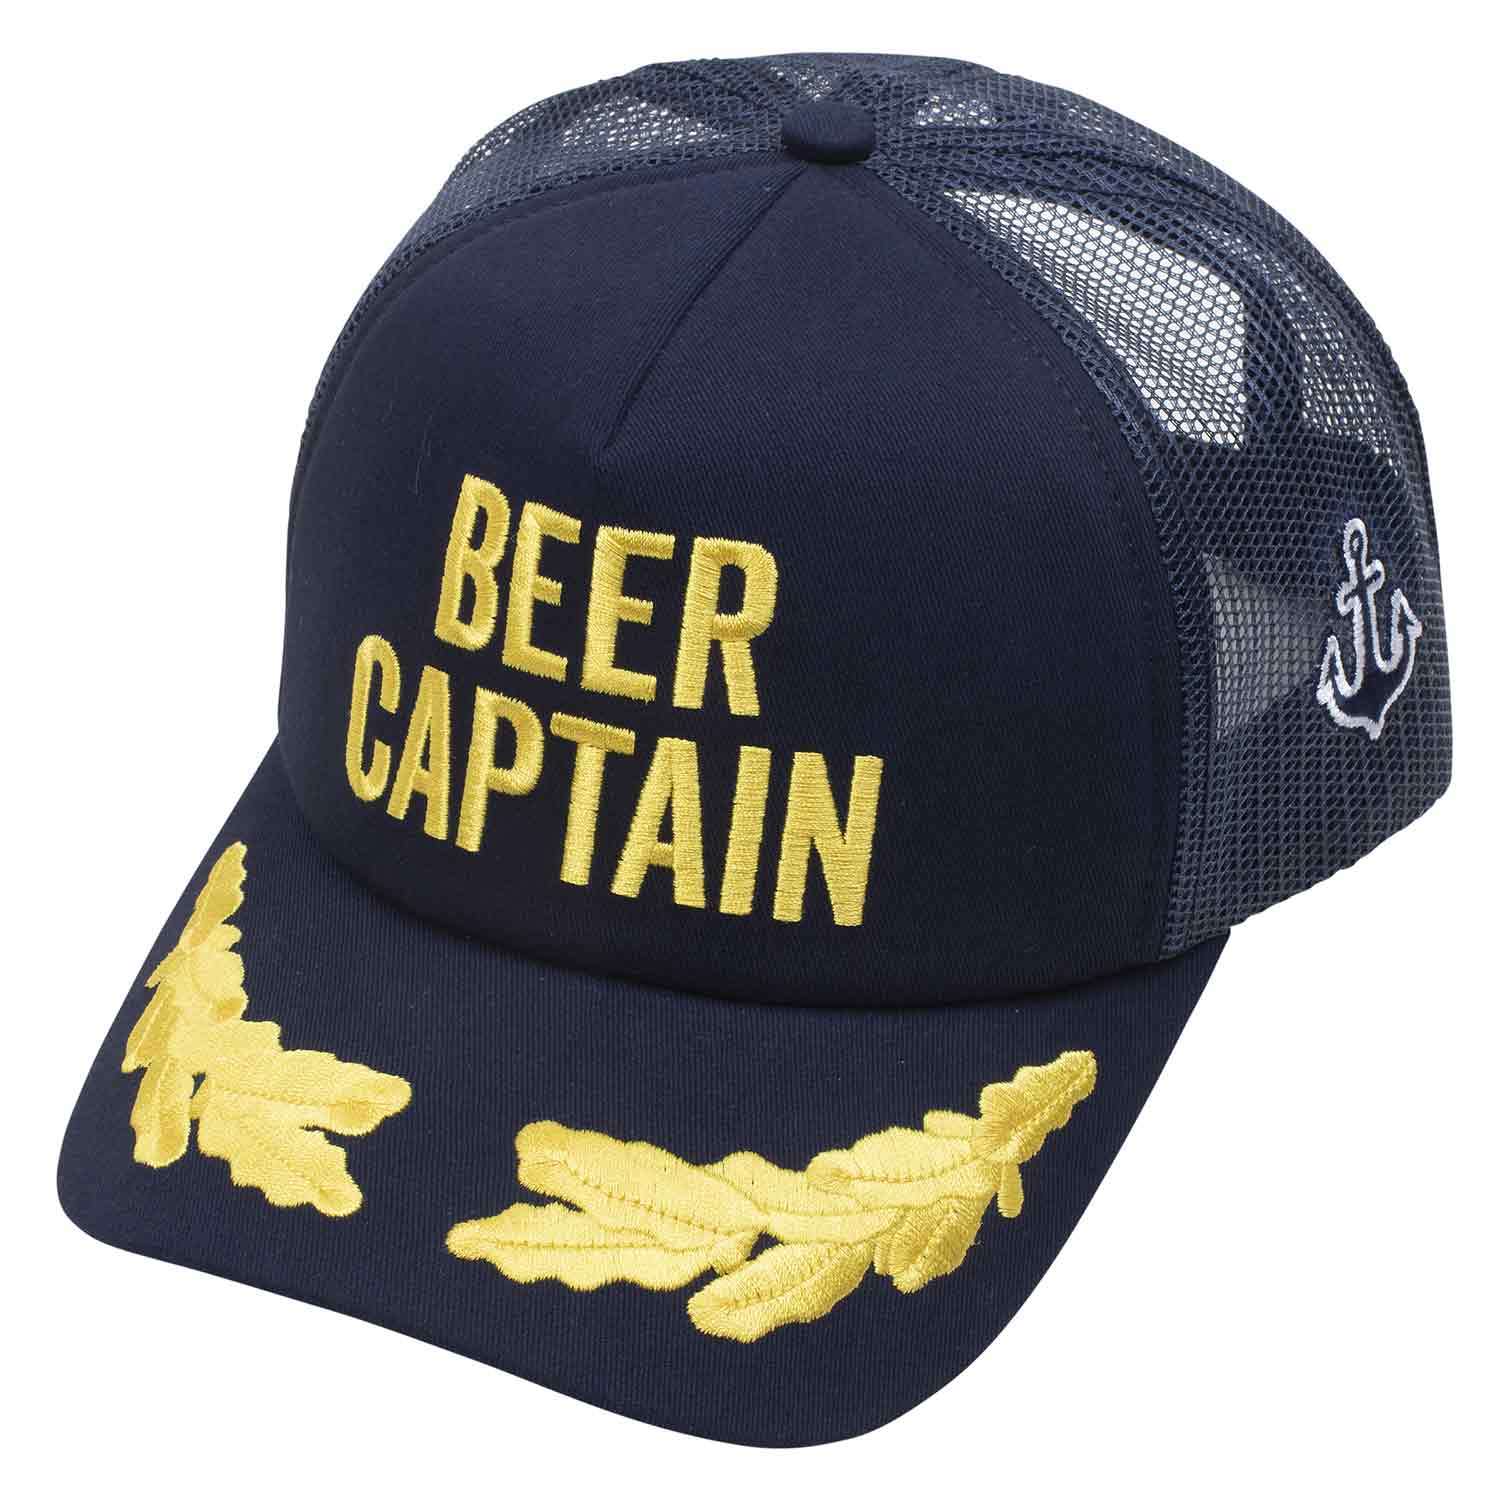 WEST MARINE Sailor Series Captain Hat